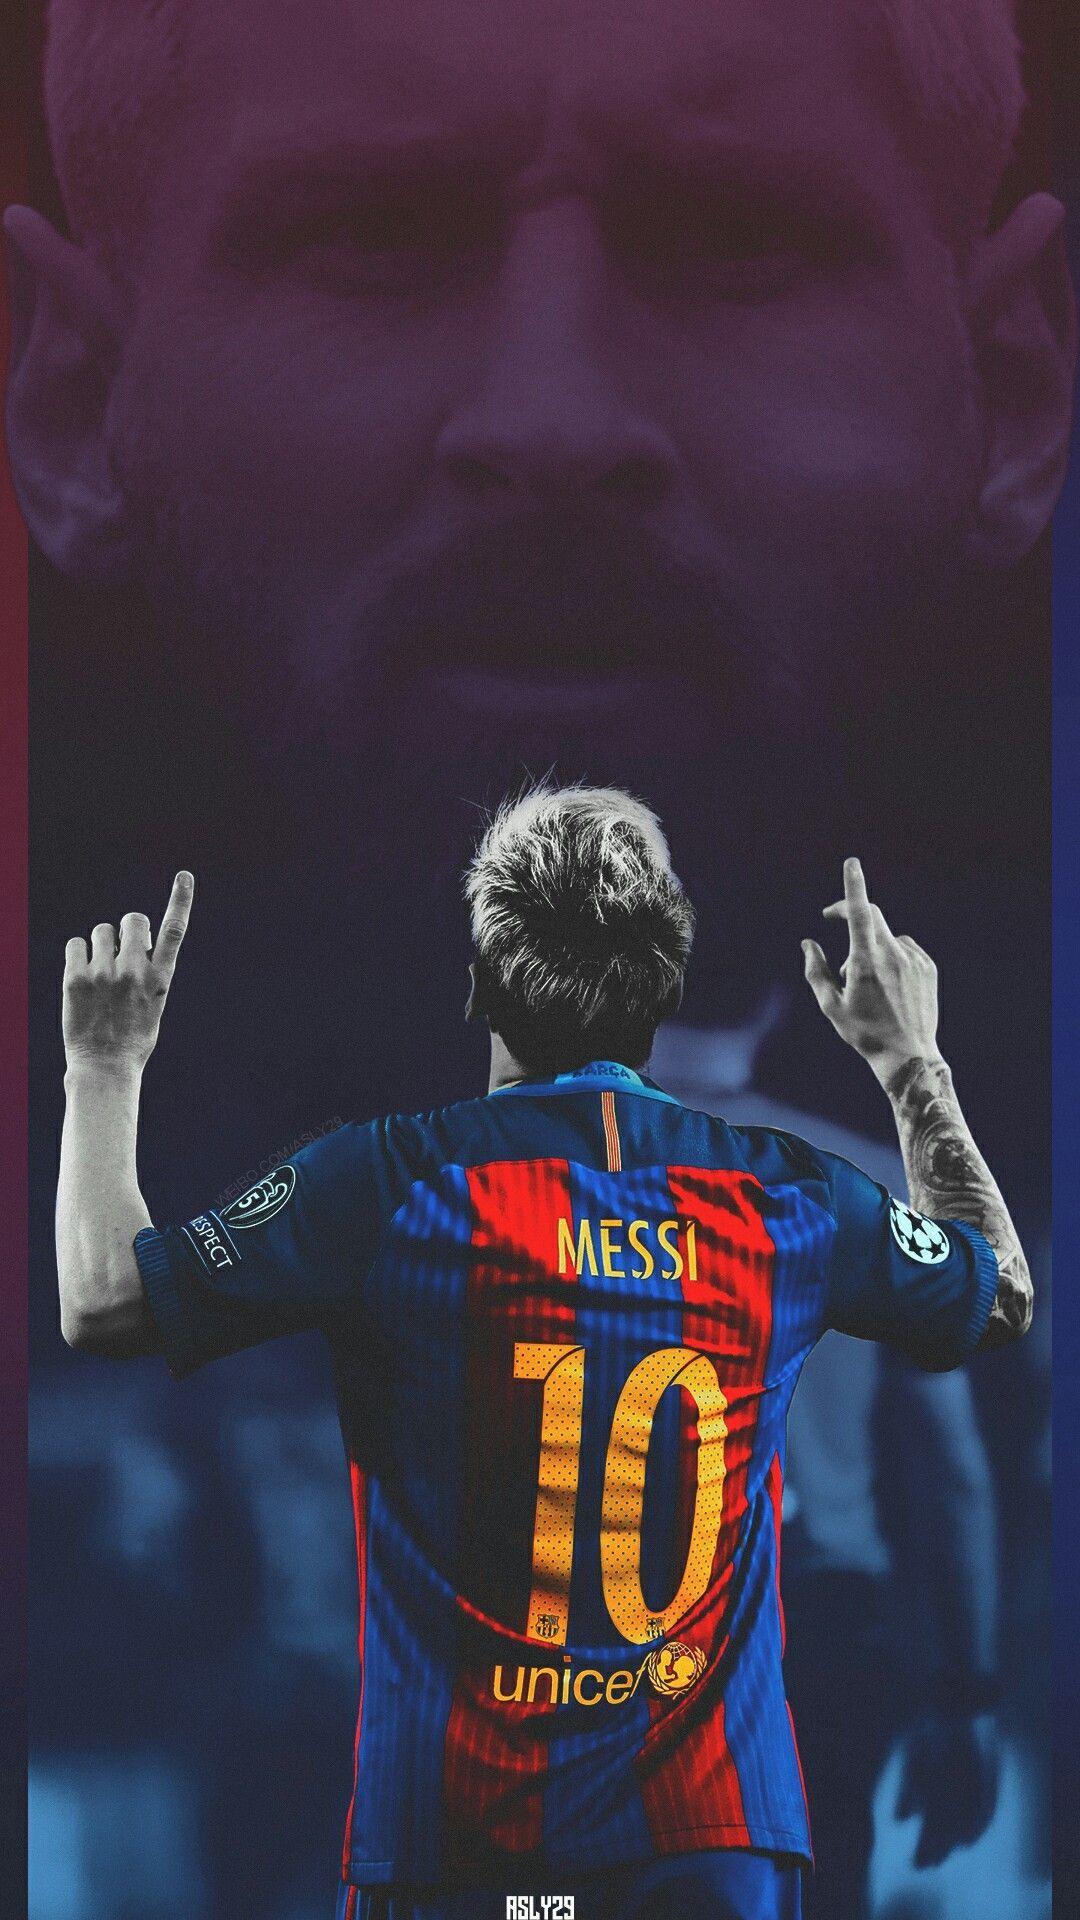 Messi wallpaper 4k chân dung là một sự pha trộn hoàn hảo giữa thể thao và nghệ thuật, thu hút người xem đến với độ phân giải siêu nét và thiết kế tinh tế. Hãy chuẩn bị cho mình một trải nghiệm tuyệt vời với trang trí máy tính của bạn bằng những hình nền Messi đầy sức sống này.